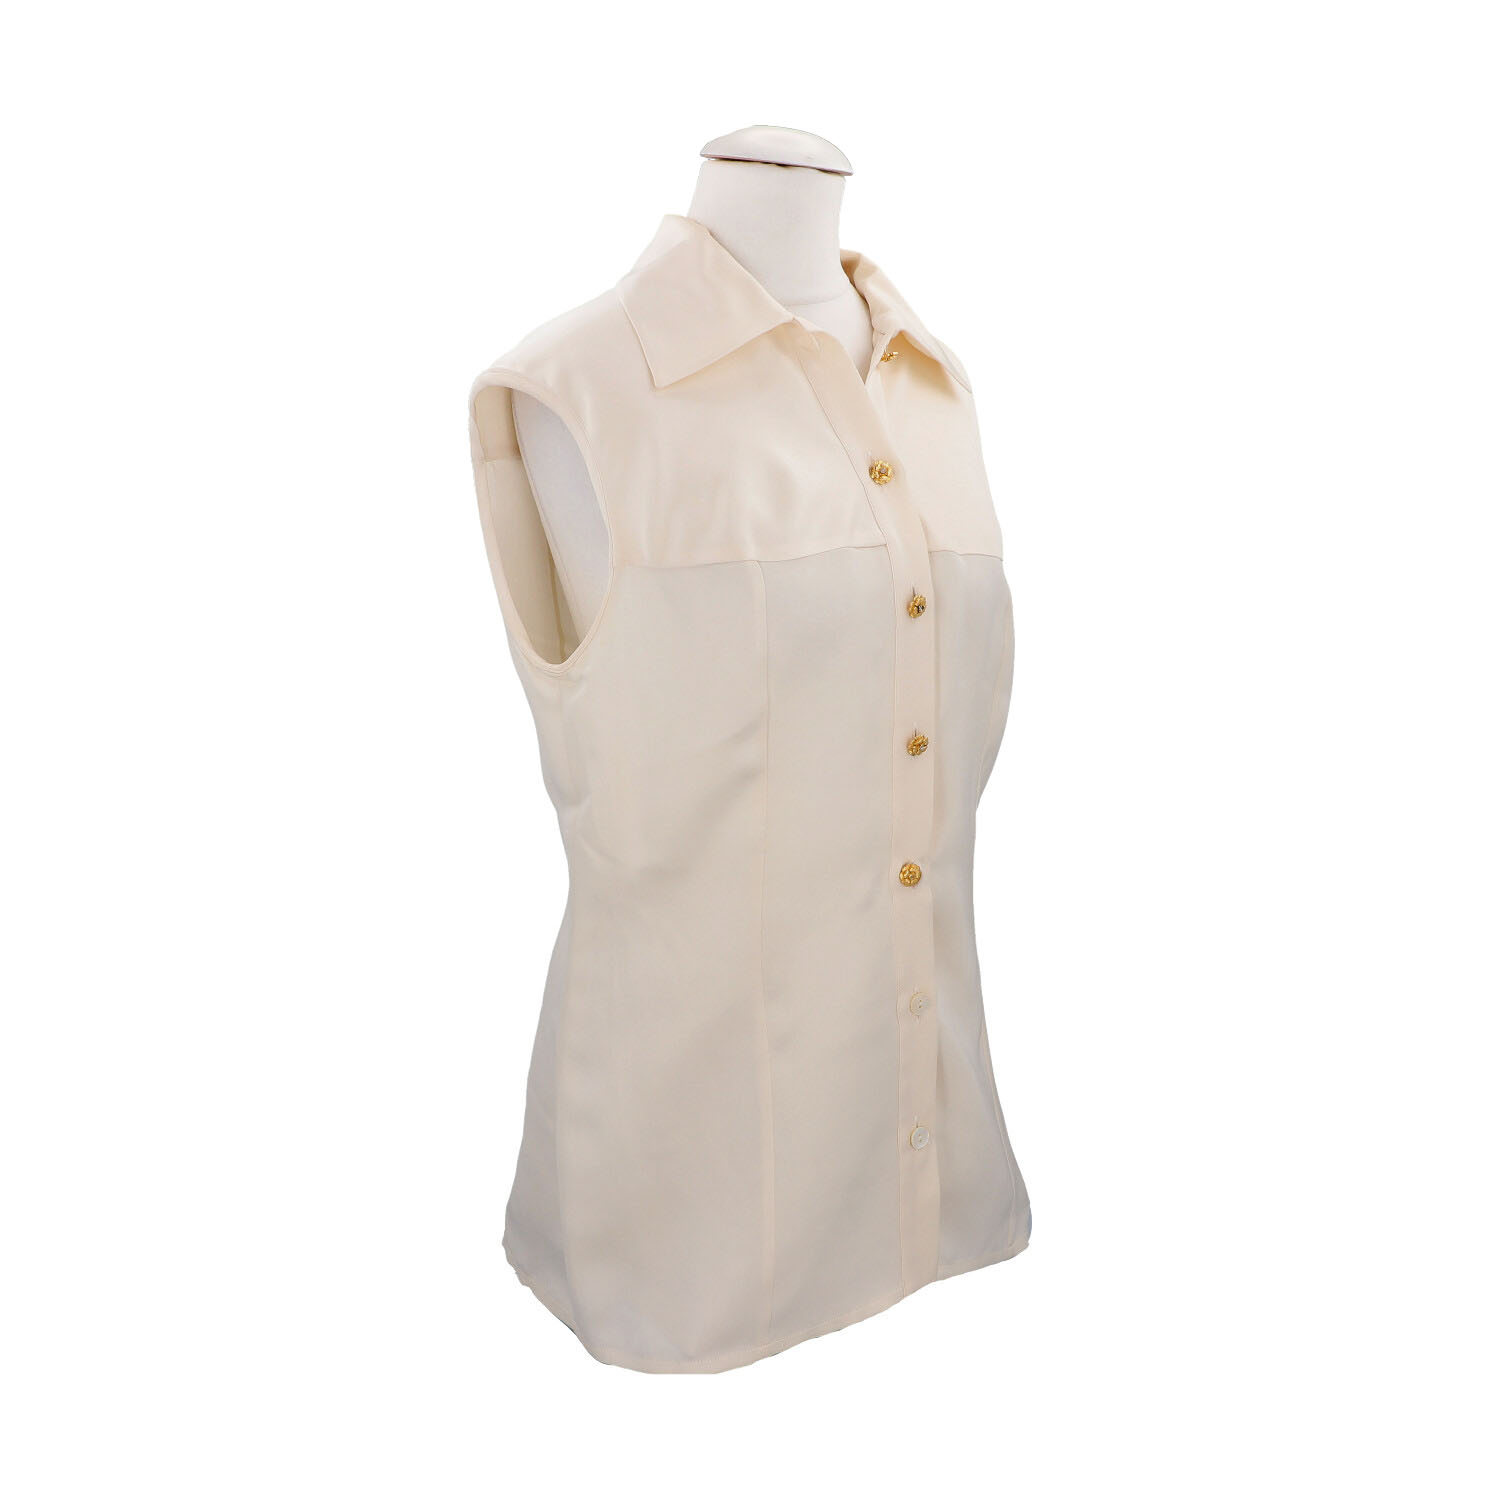 CHANEL BOUTIQUE Bluse, Gr. 42.Herstellergröße 44. Cremefarbenes Seiden-Modell mit Umlegekragen und - Image 2 of 4